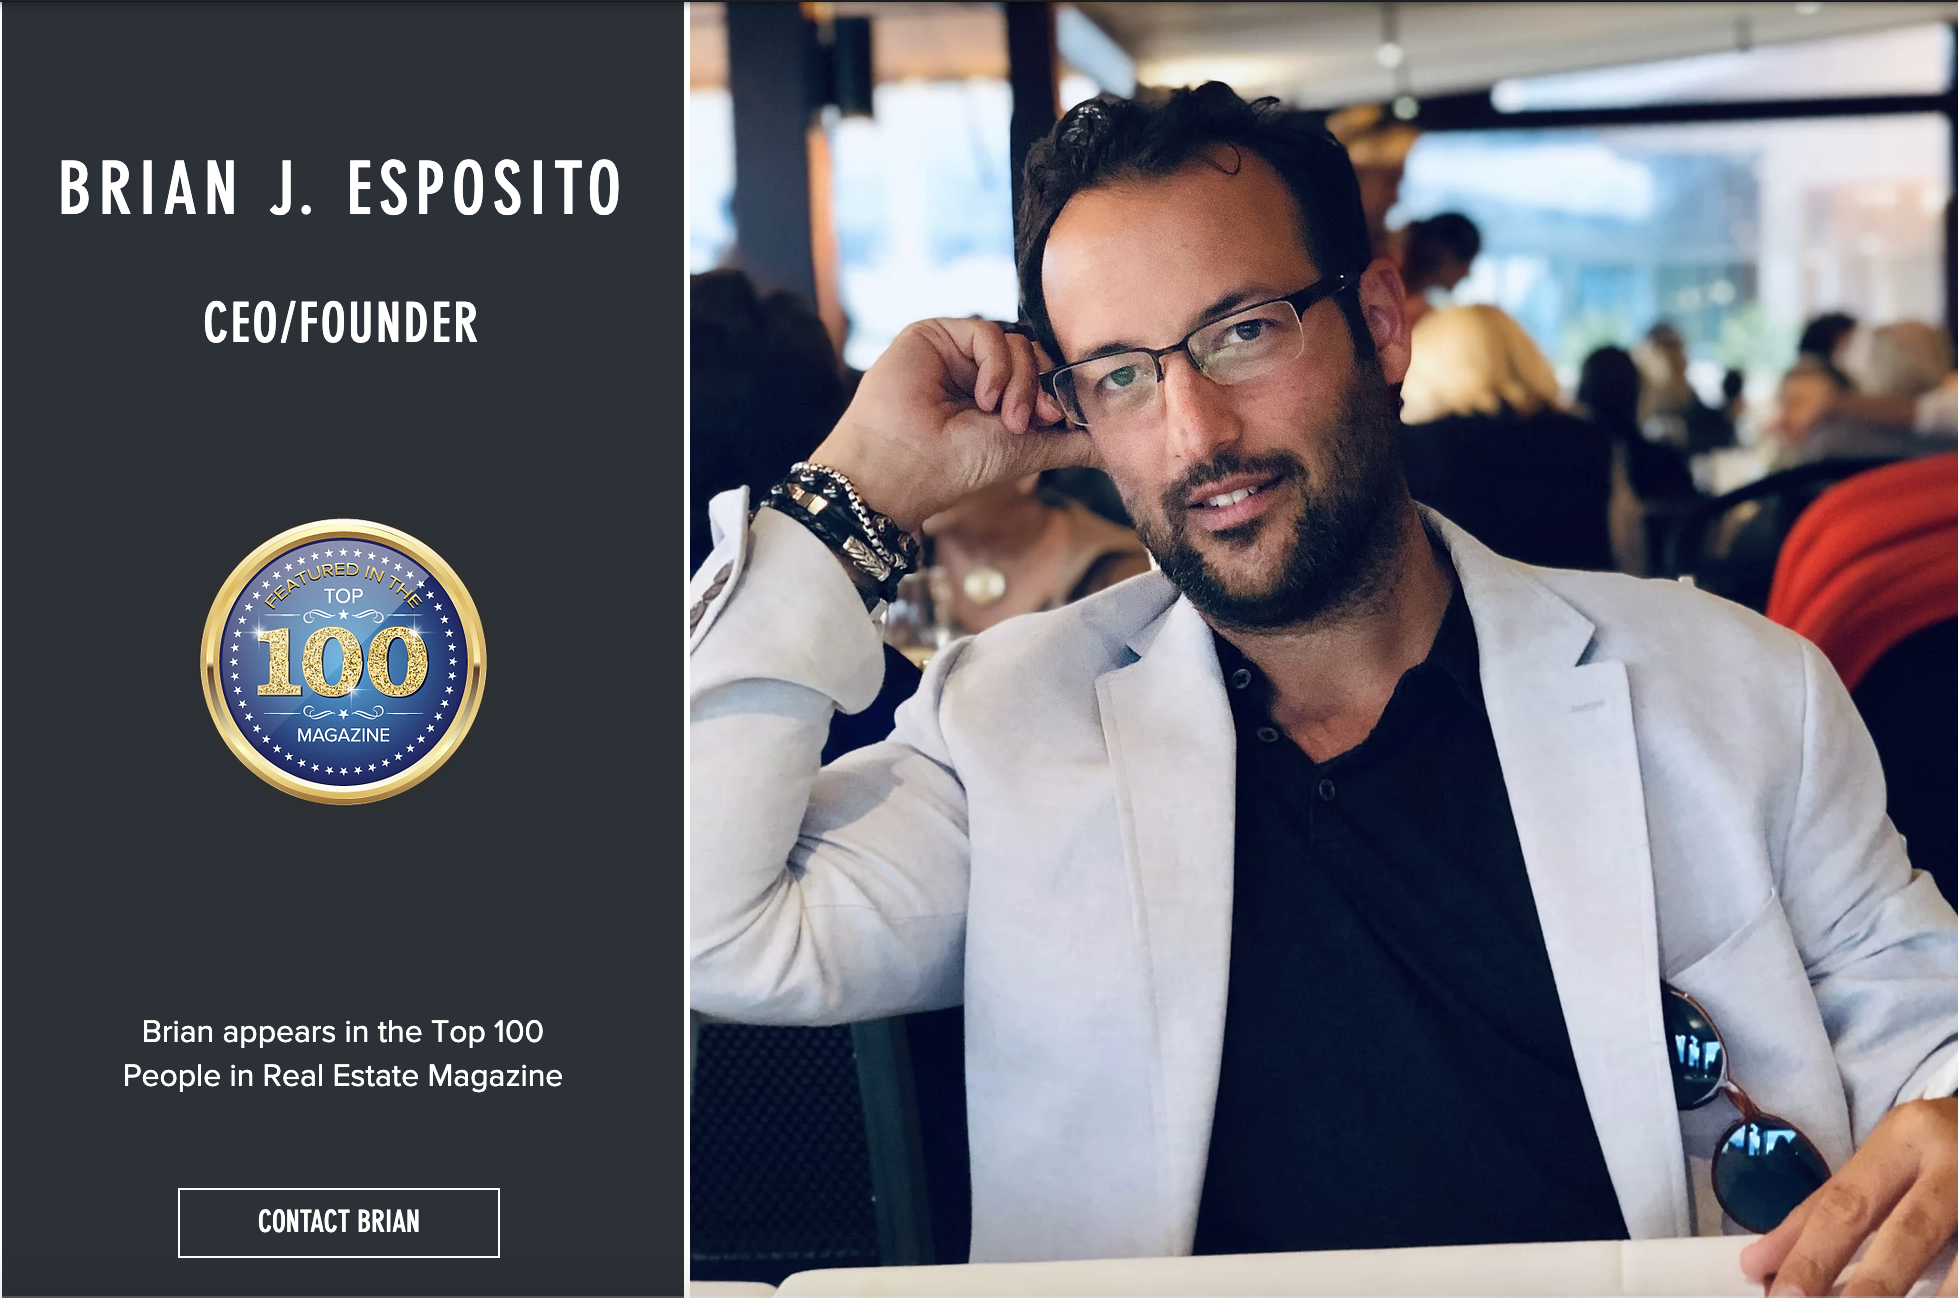 The Top 100 Magazine - Brian J. Esposito Top 100 in Real Estate